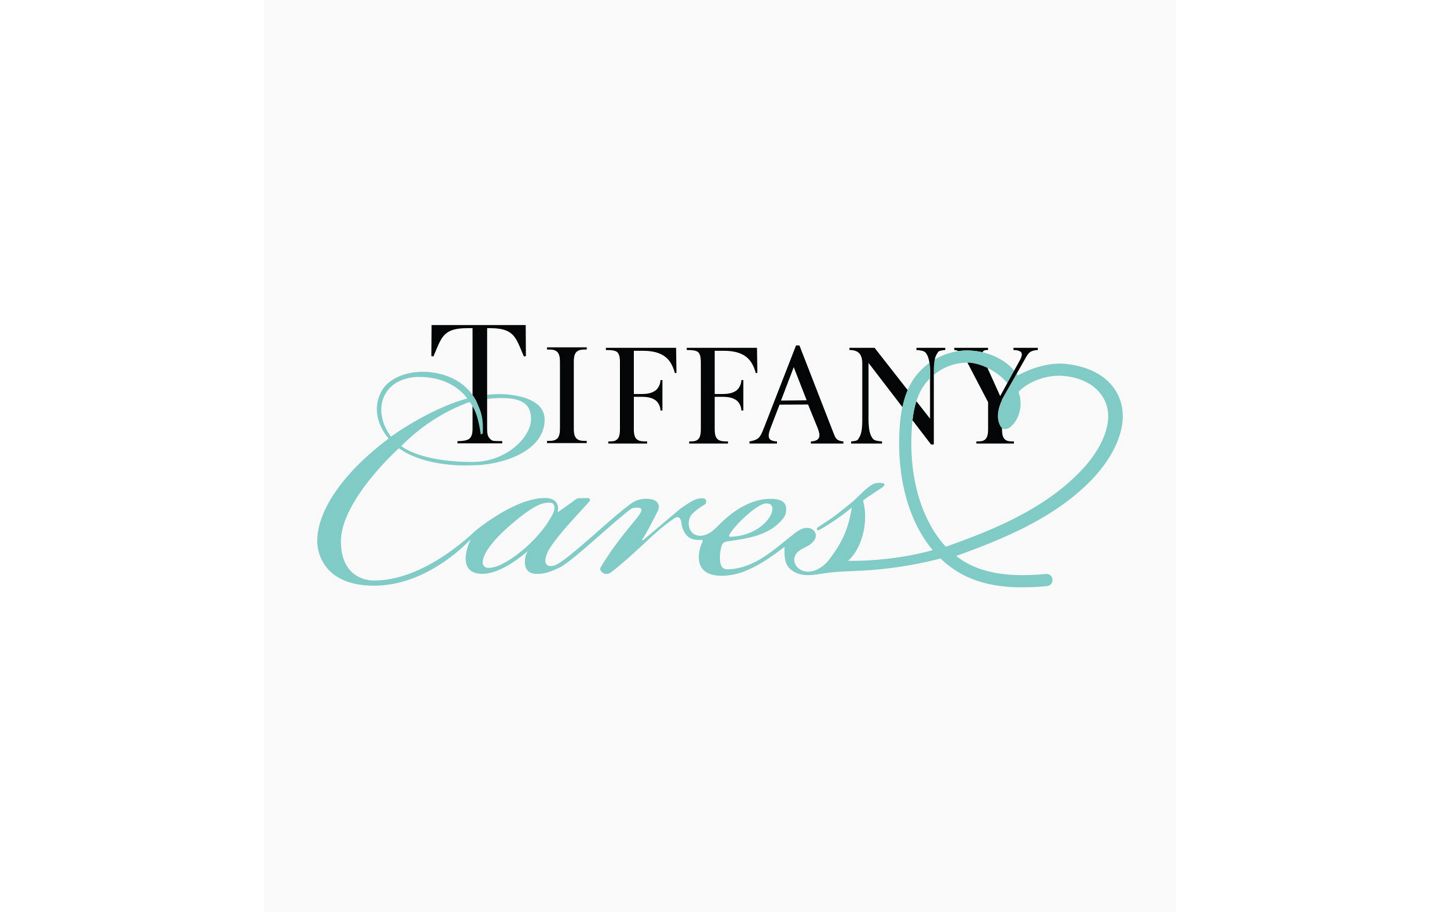 Logo, Tiffany & Co.